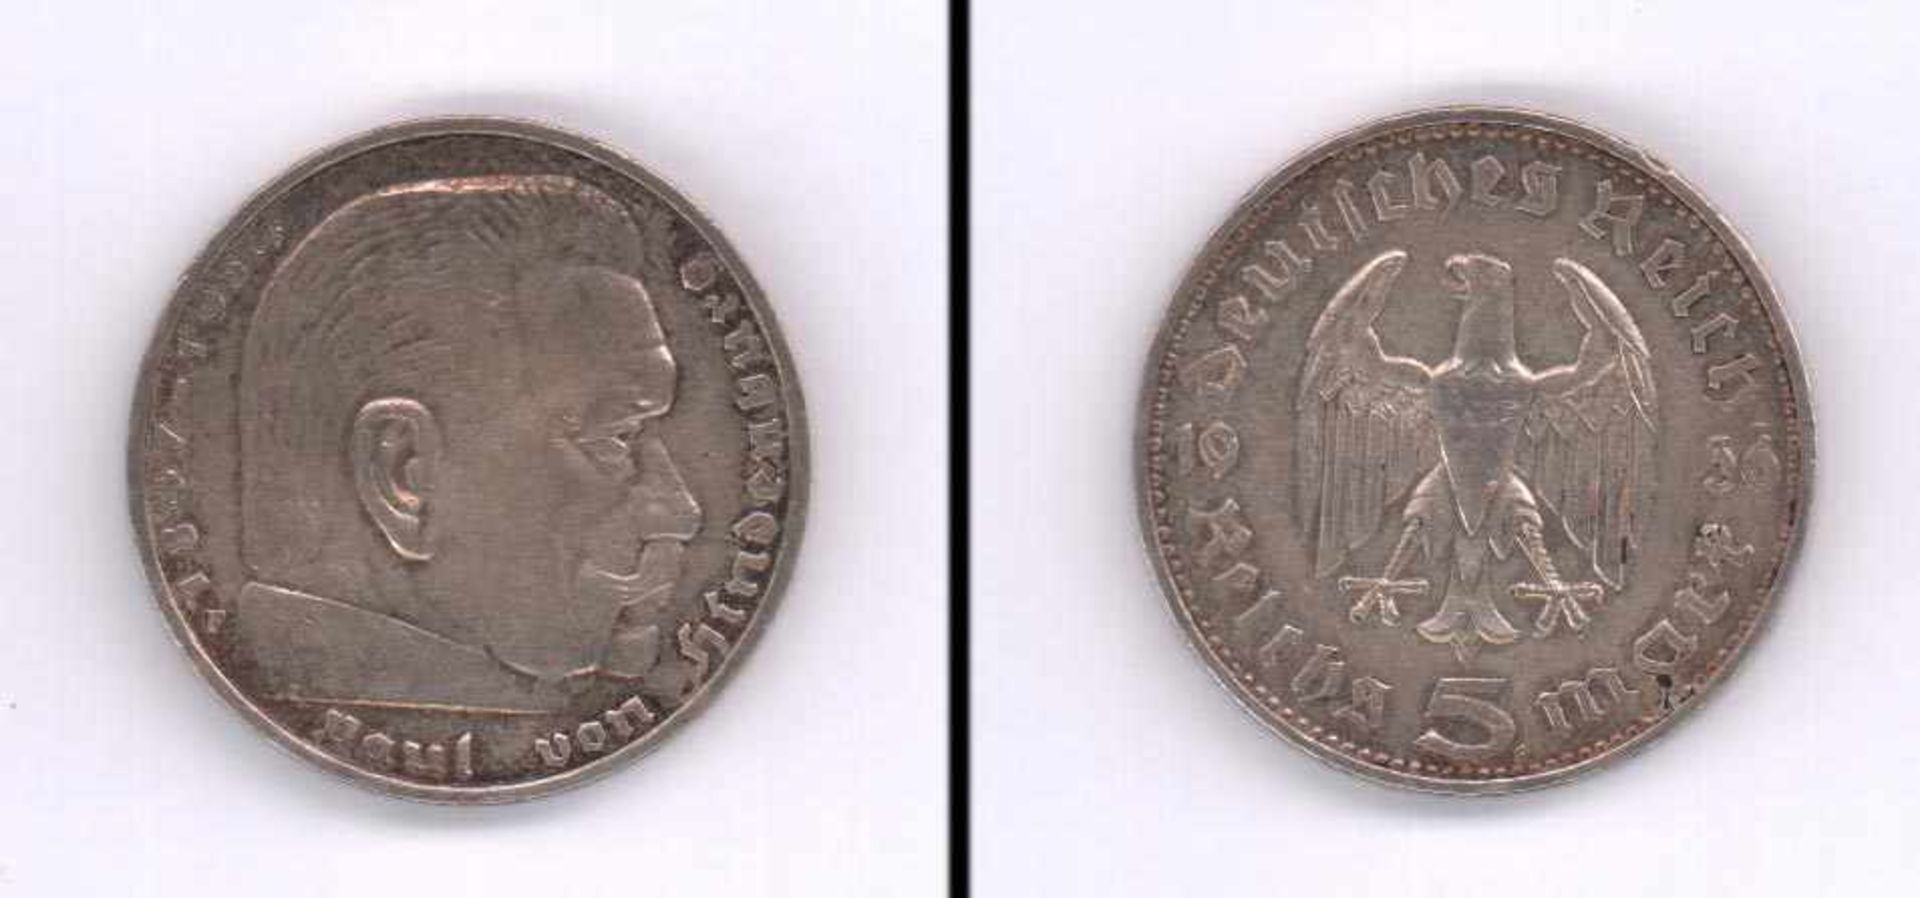 5 Reichsmark Deutsches Reich 1936 F, Hindenburg, Silber